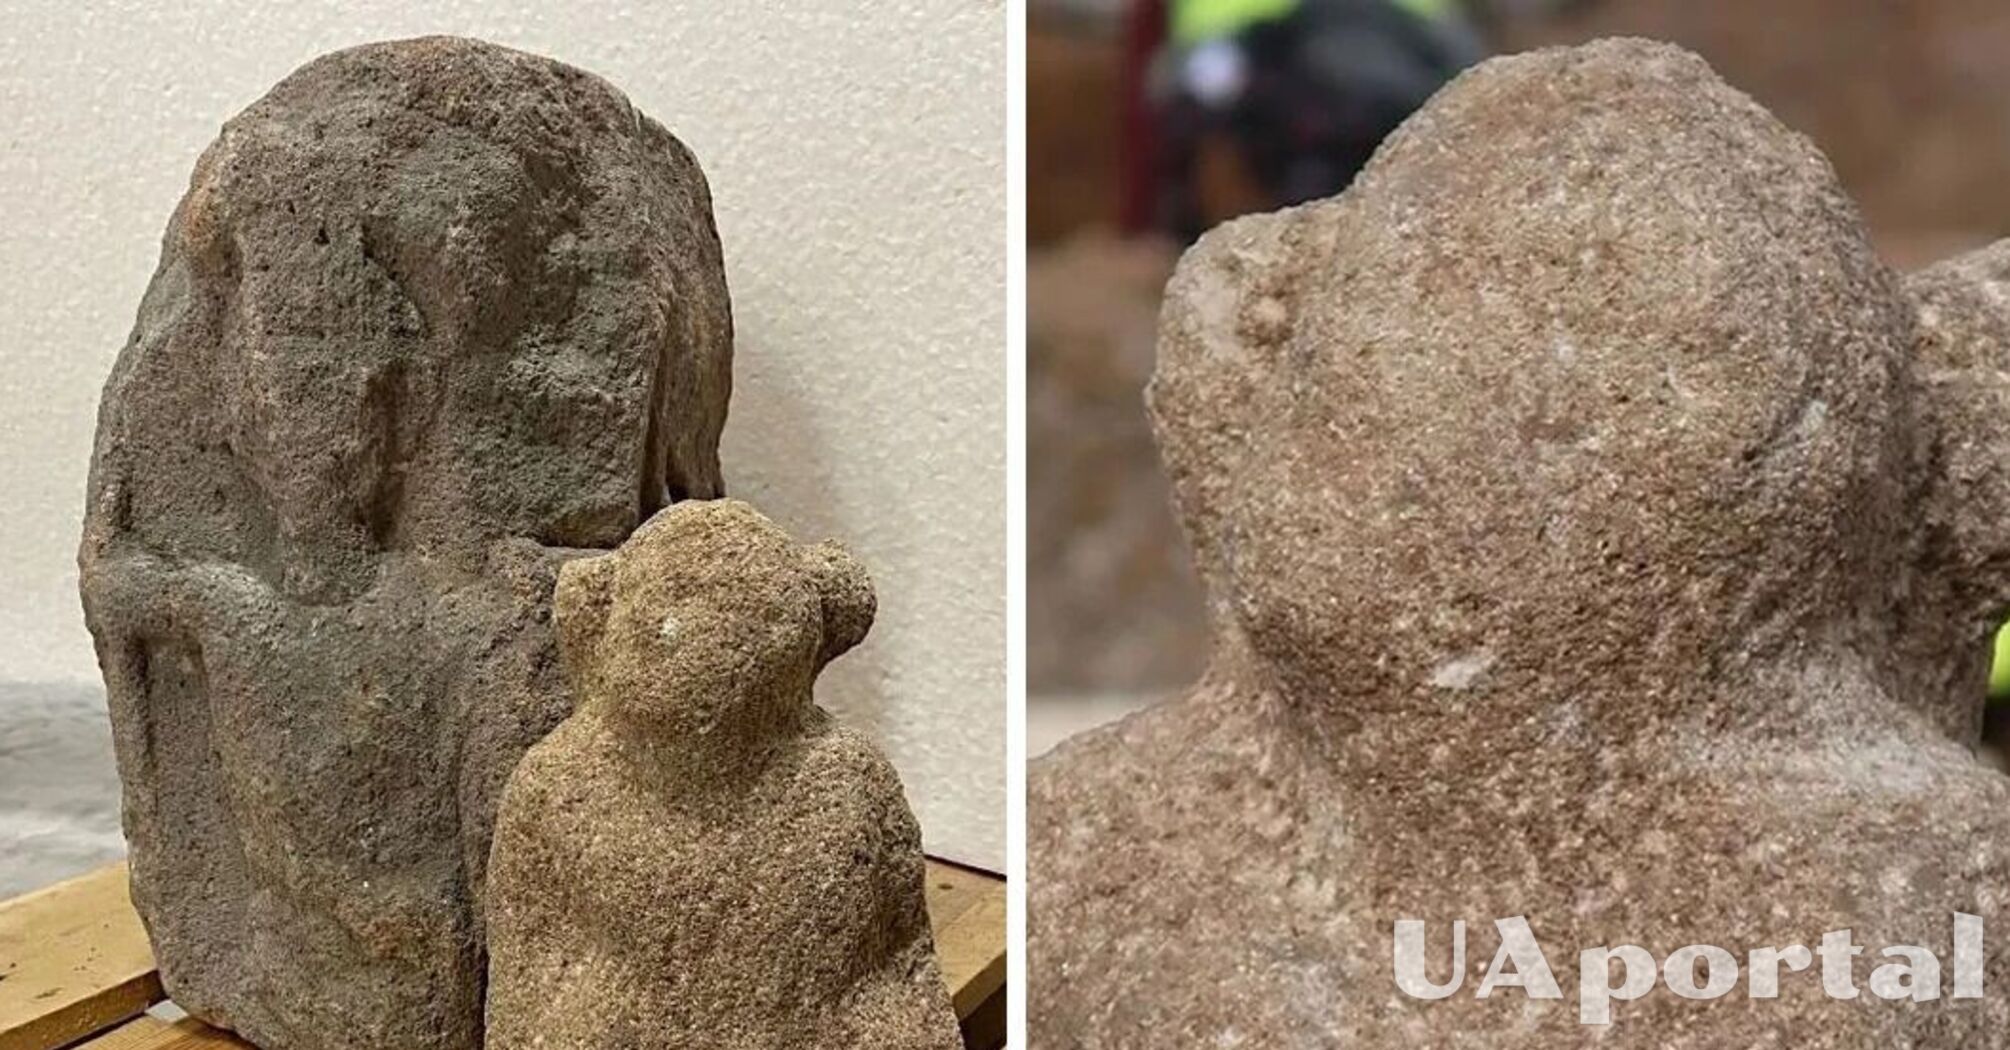 Лицо человека, а тело змеи: в Германии нашли скульптуру удивительного божества (фото)